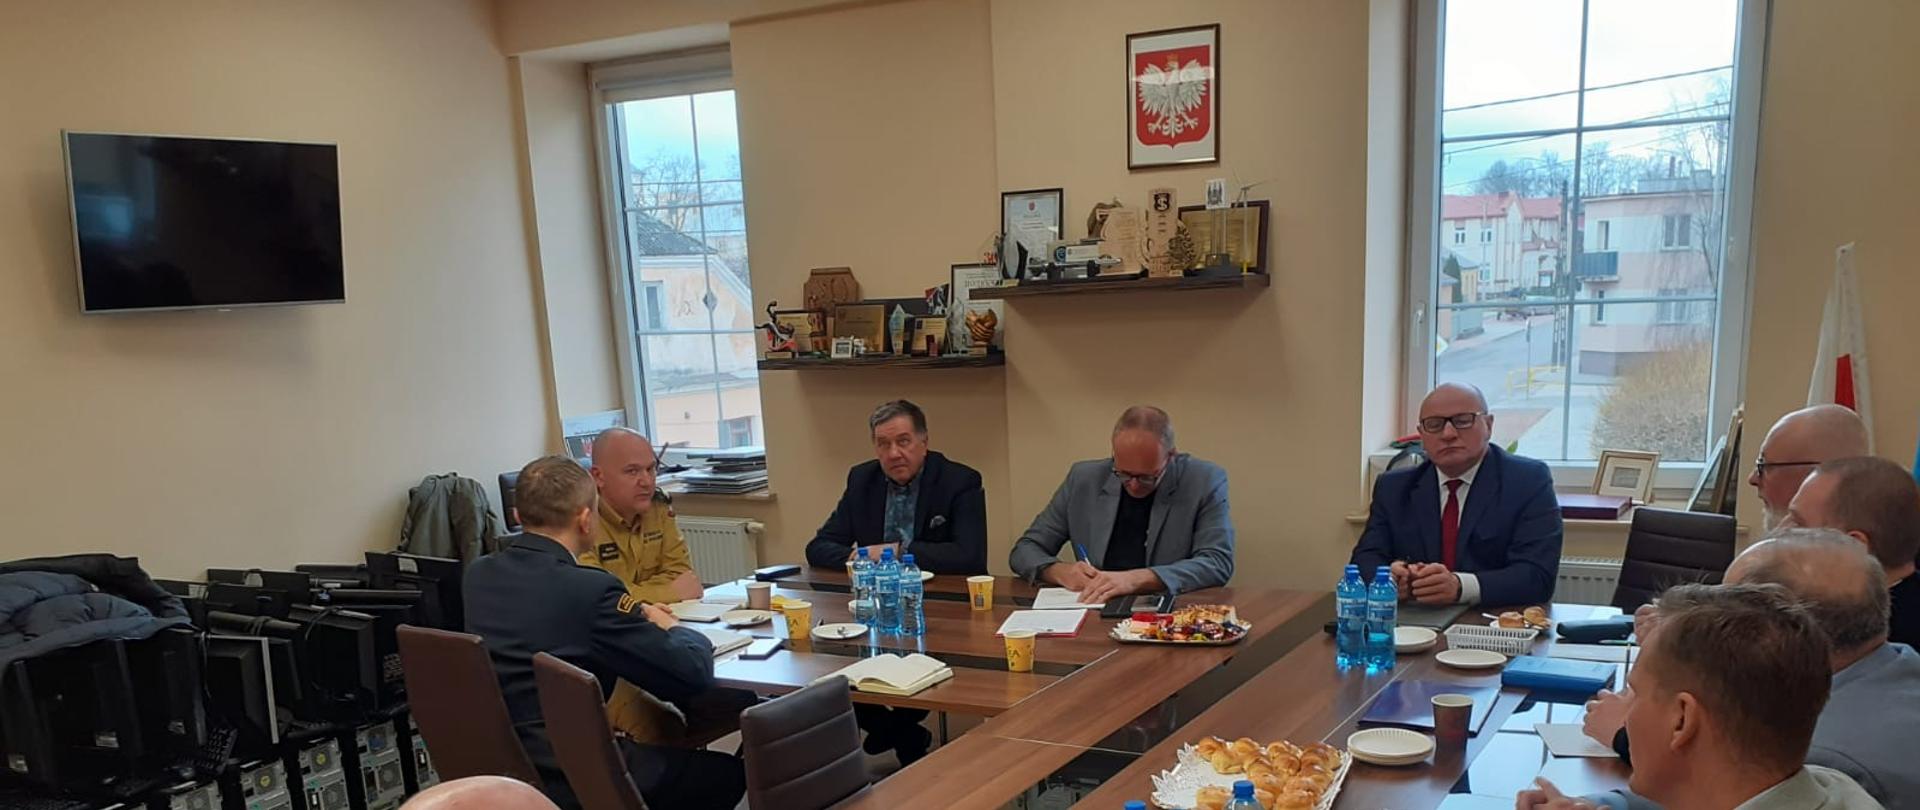 Posiedzenie Zarządu Powiatowego ZOSP RP powiatu grajewskiego. Członkowie Zarządu oraz zaproszeni goście siedzą przy stole konferencyjnym.